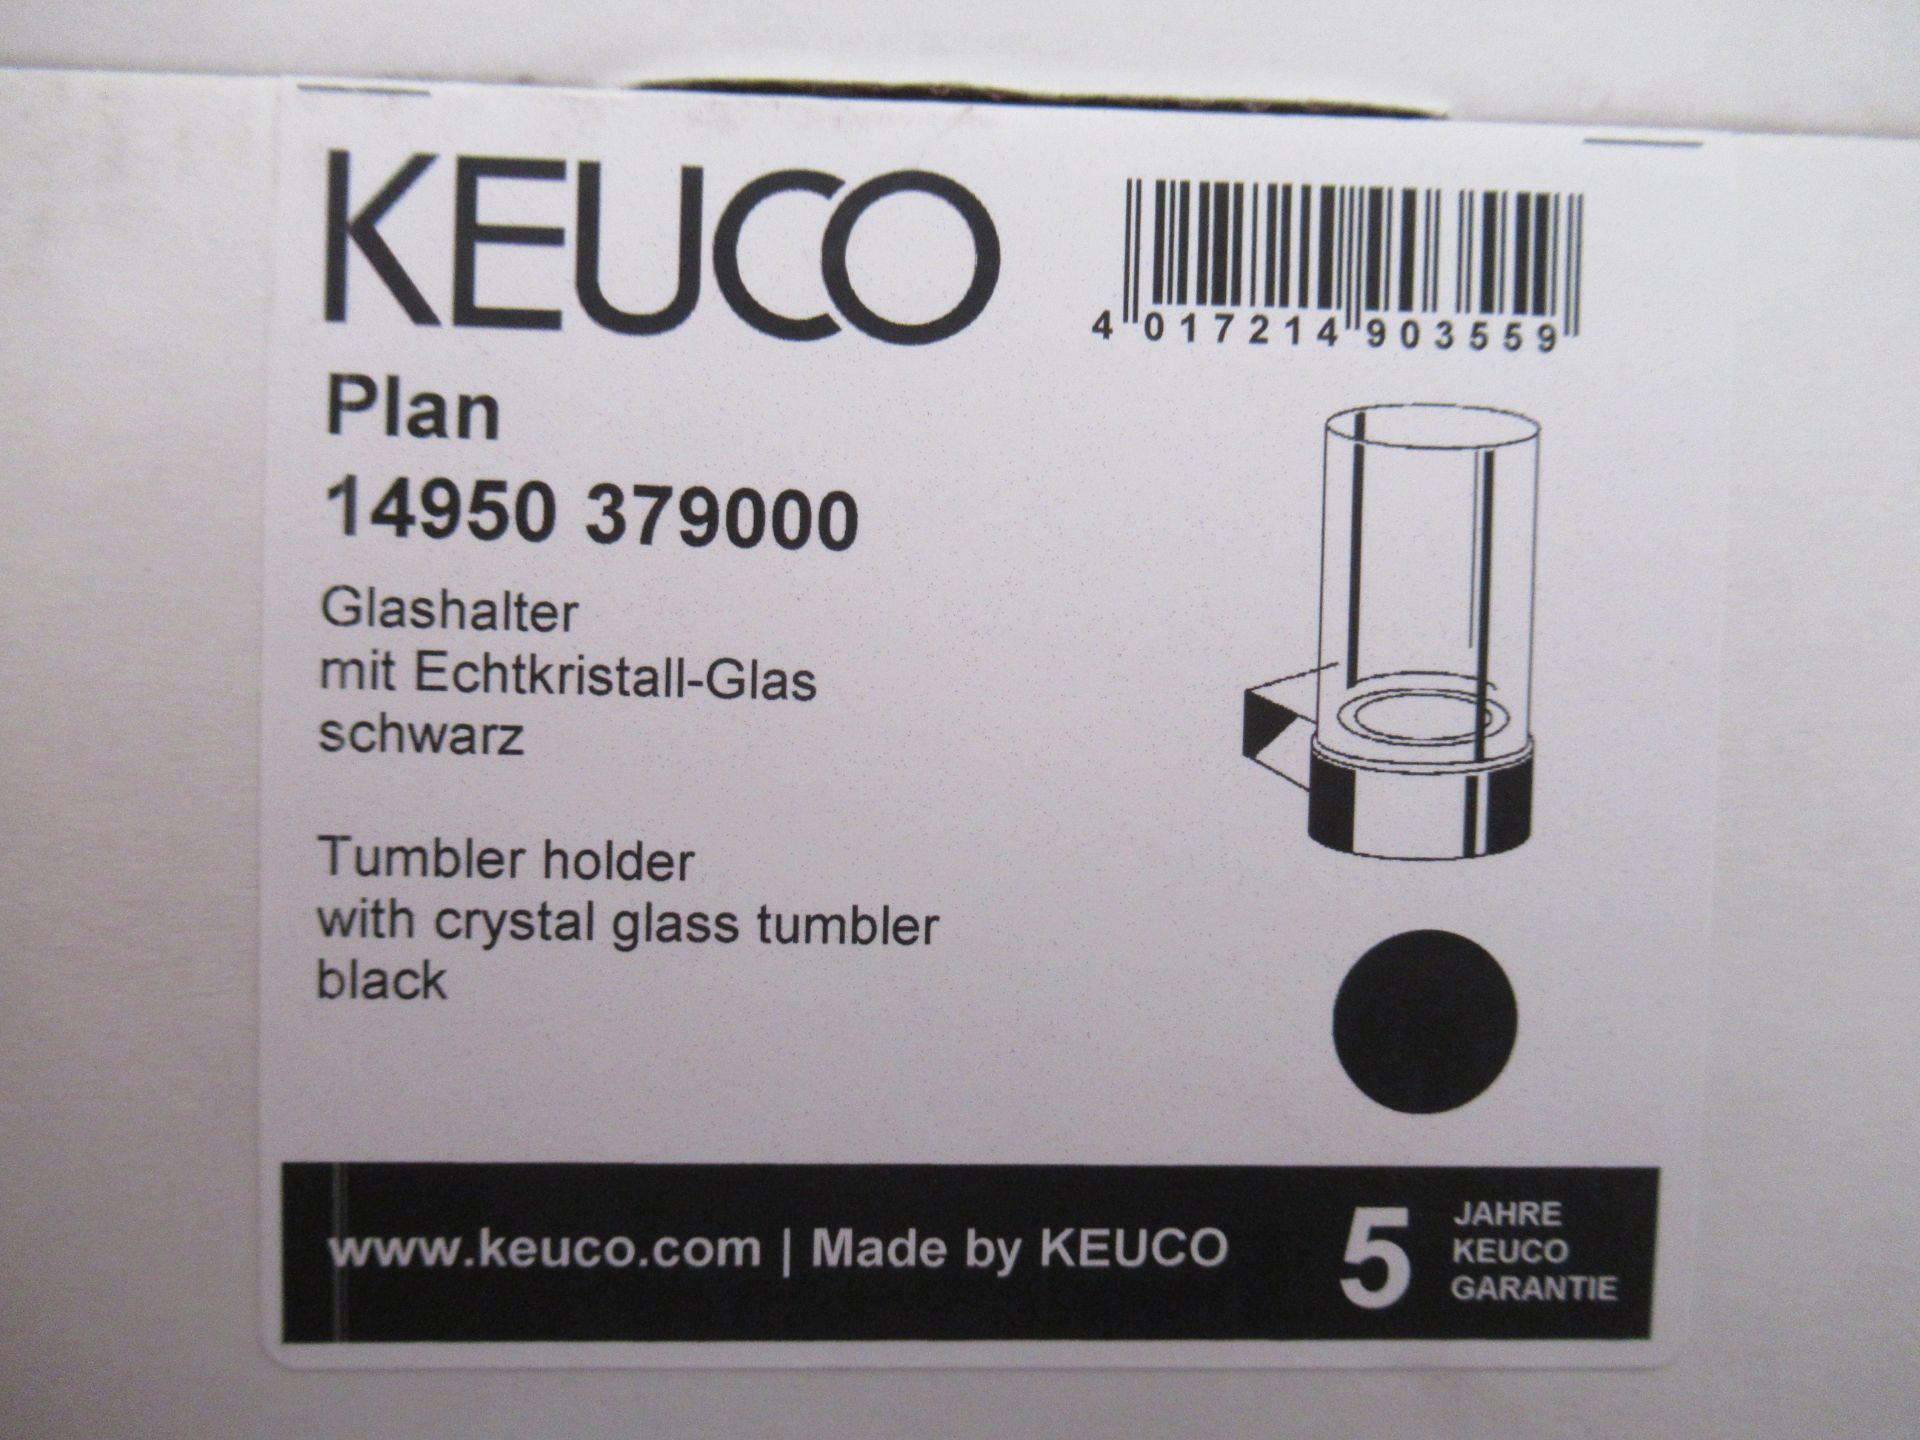 3 x Keuco Plan Tumbler Holder Black, P/N 14950-379000